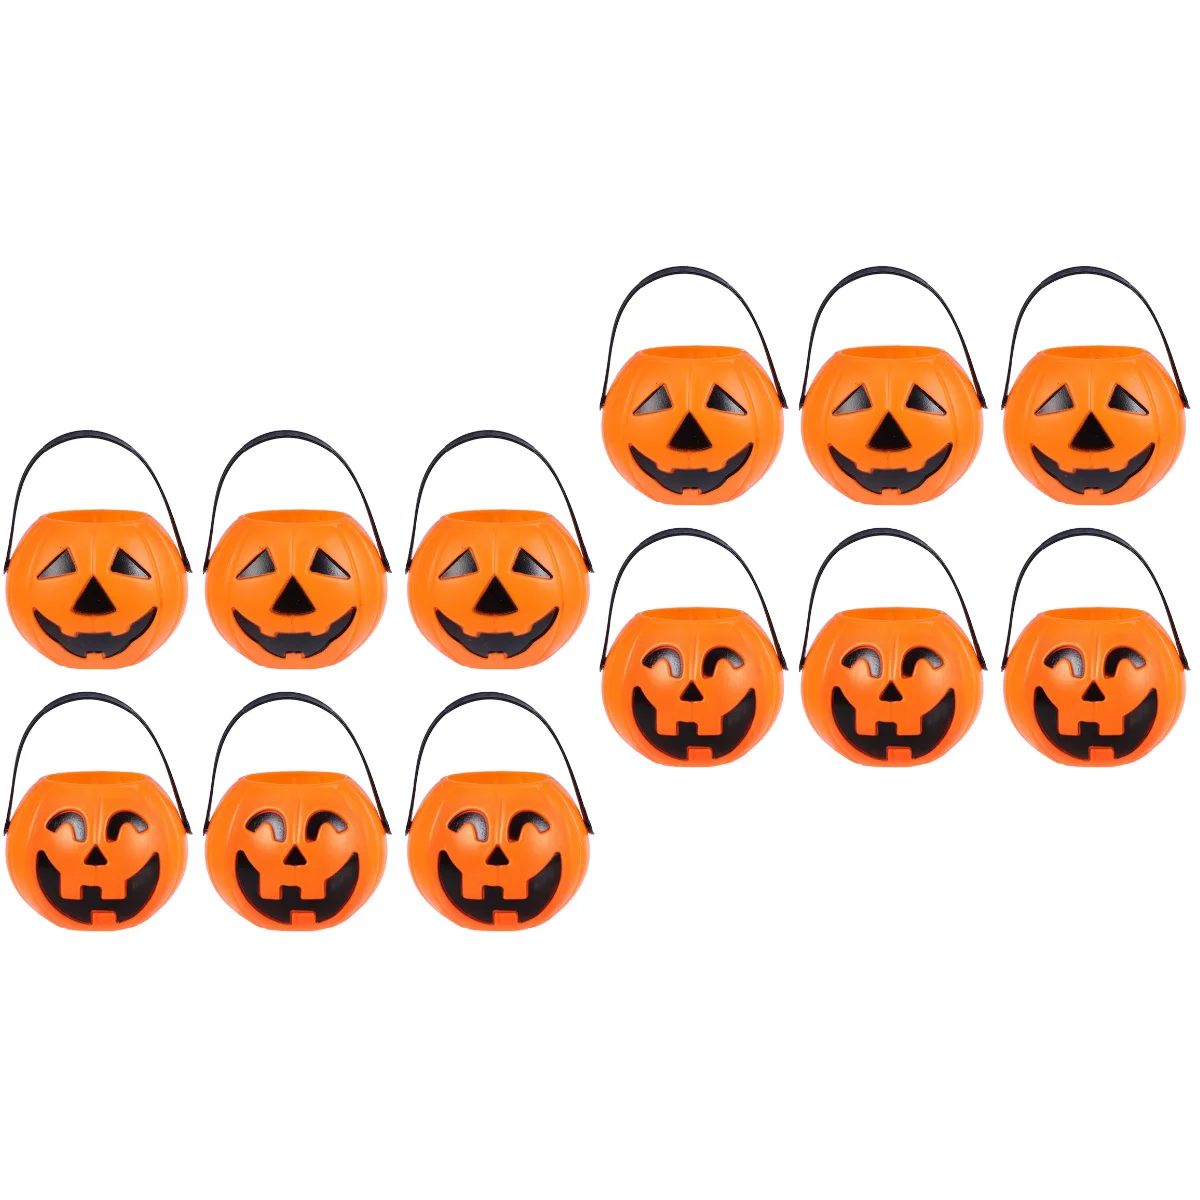 

12 pcs Halloween Portable Pumpkin Shape Bucket Children Trick or Treat Candy Pail Holder 7cm Small Pumpkin Buckets (Bend Eye